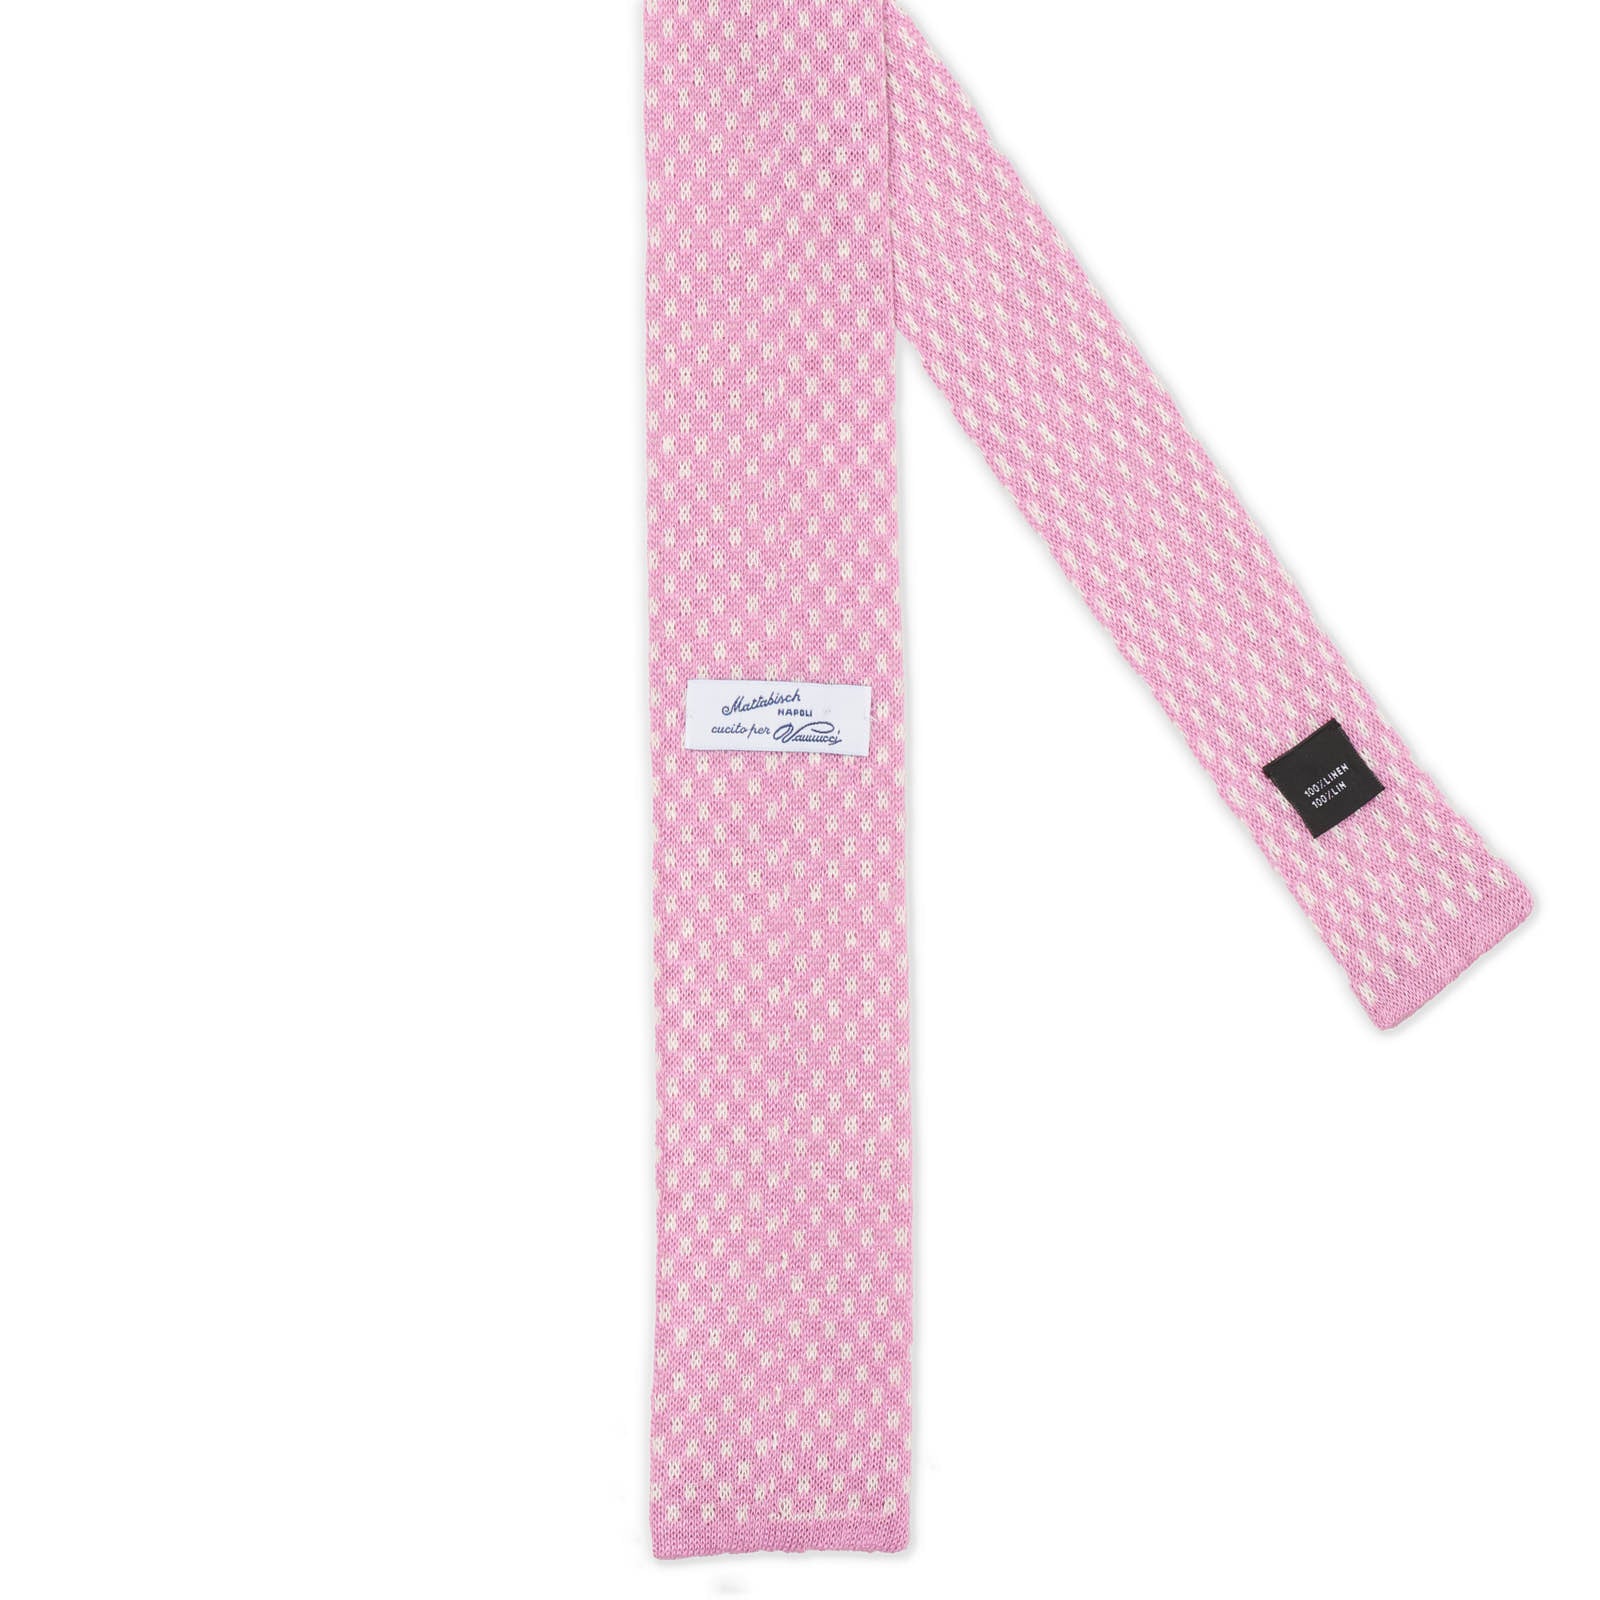 MATTABISCH FOR VANNUCCI Purple Dotted Linen Knit Tie NEW